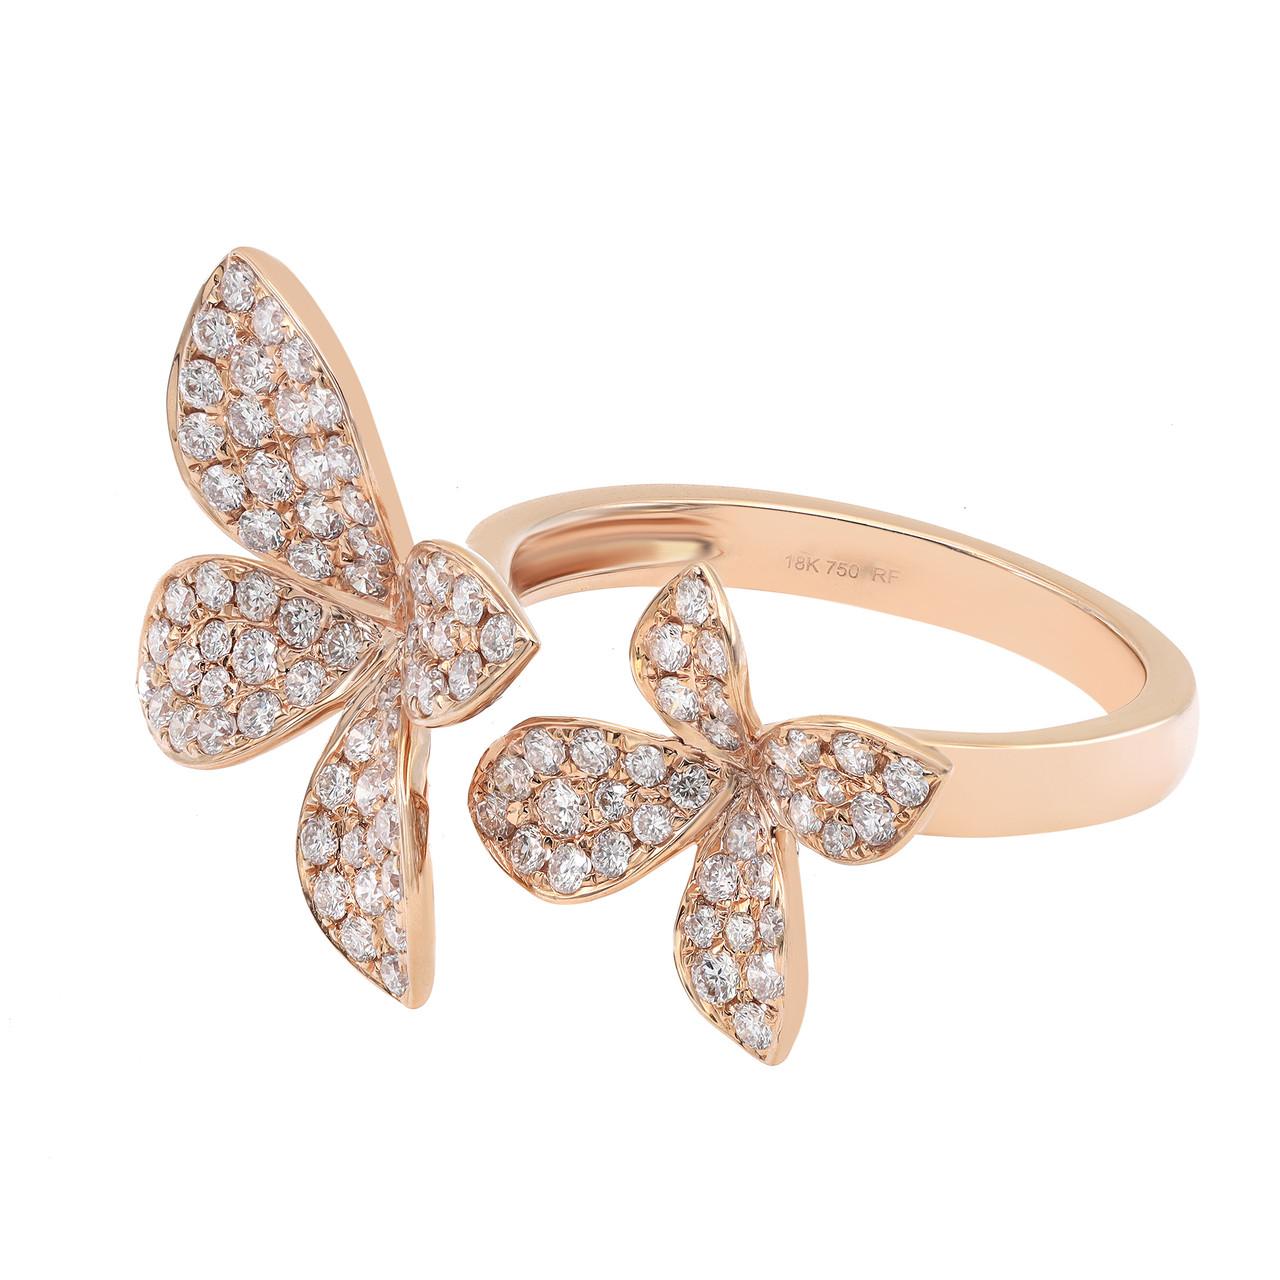 Lassen Sie sich von der Schönheit unseres 0,95-Karat-Diamant-Doppelblumen-Statementrings aus 18 Karat Roségold verzaubern. Dieses bezaubernde Stück verbindet mühelos Eleganz und Skurrilität und zeigt zwei exquisite Blüten, die mit schimmernden